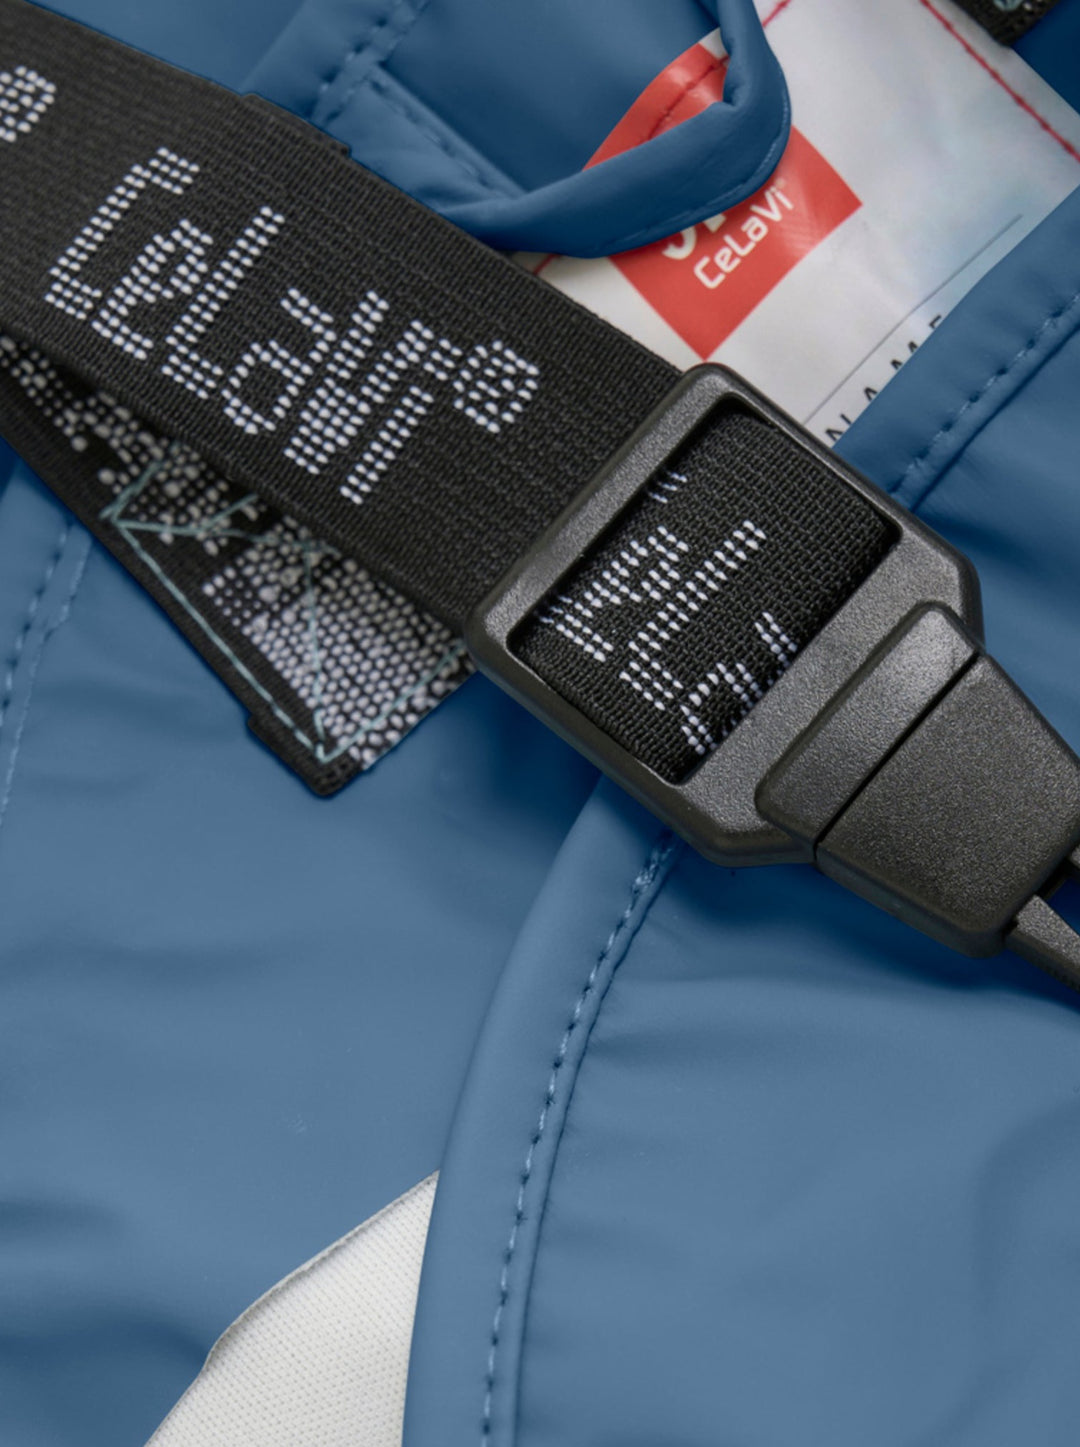 Celavi Spodnie przeciwdeszczowe dla dzieci kurtka przeciwdeszczowa dziecięca Iceblue 80 cm